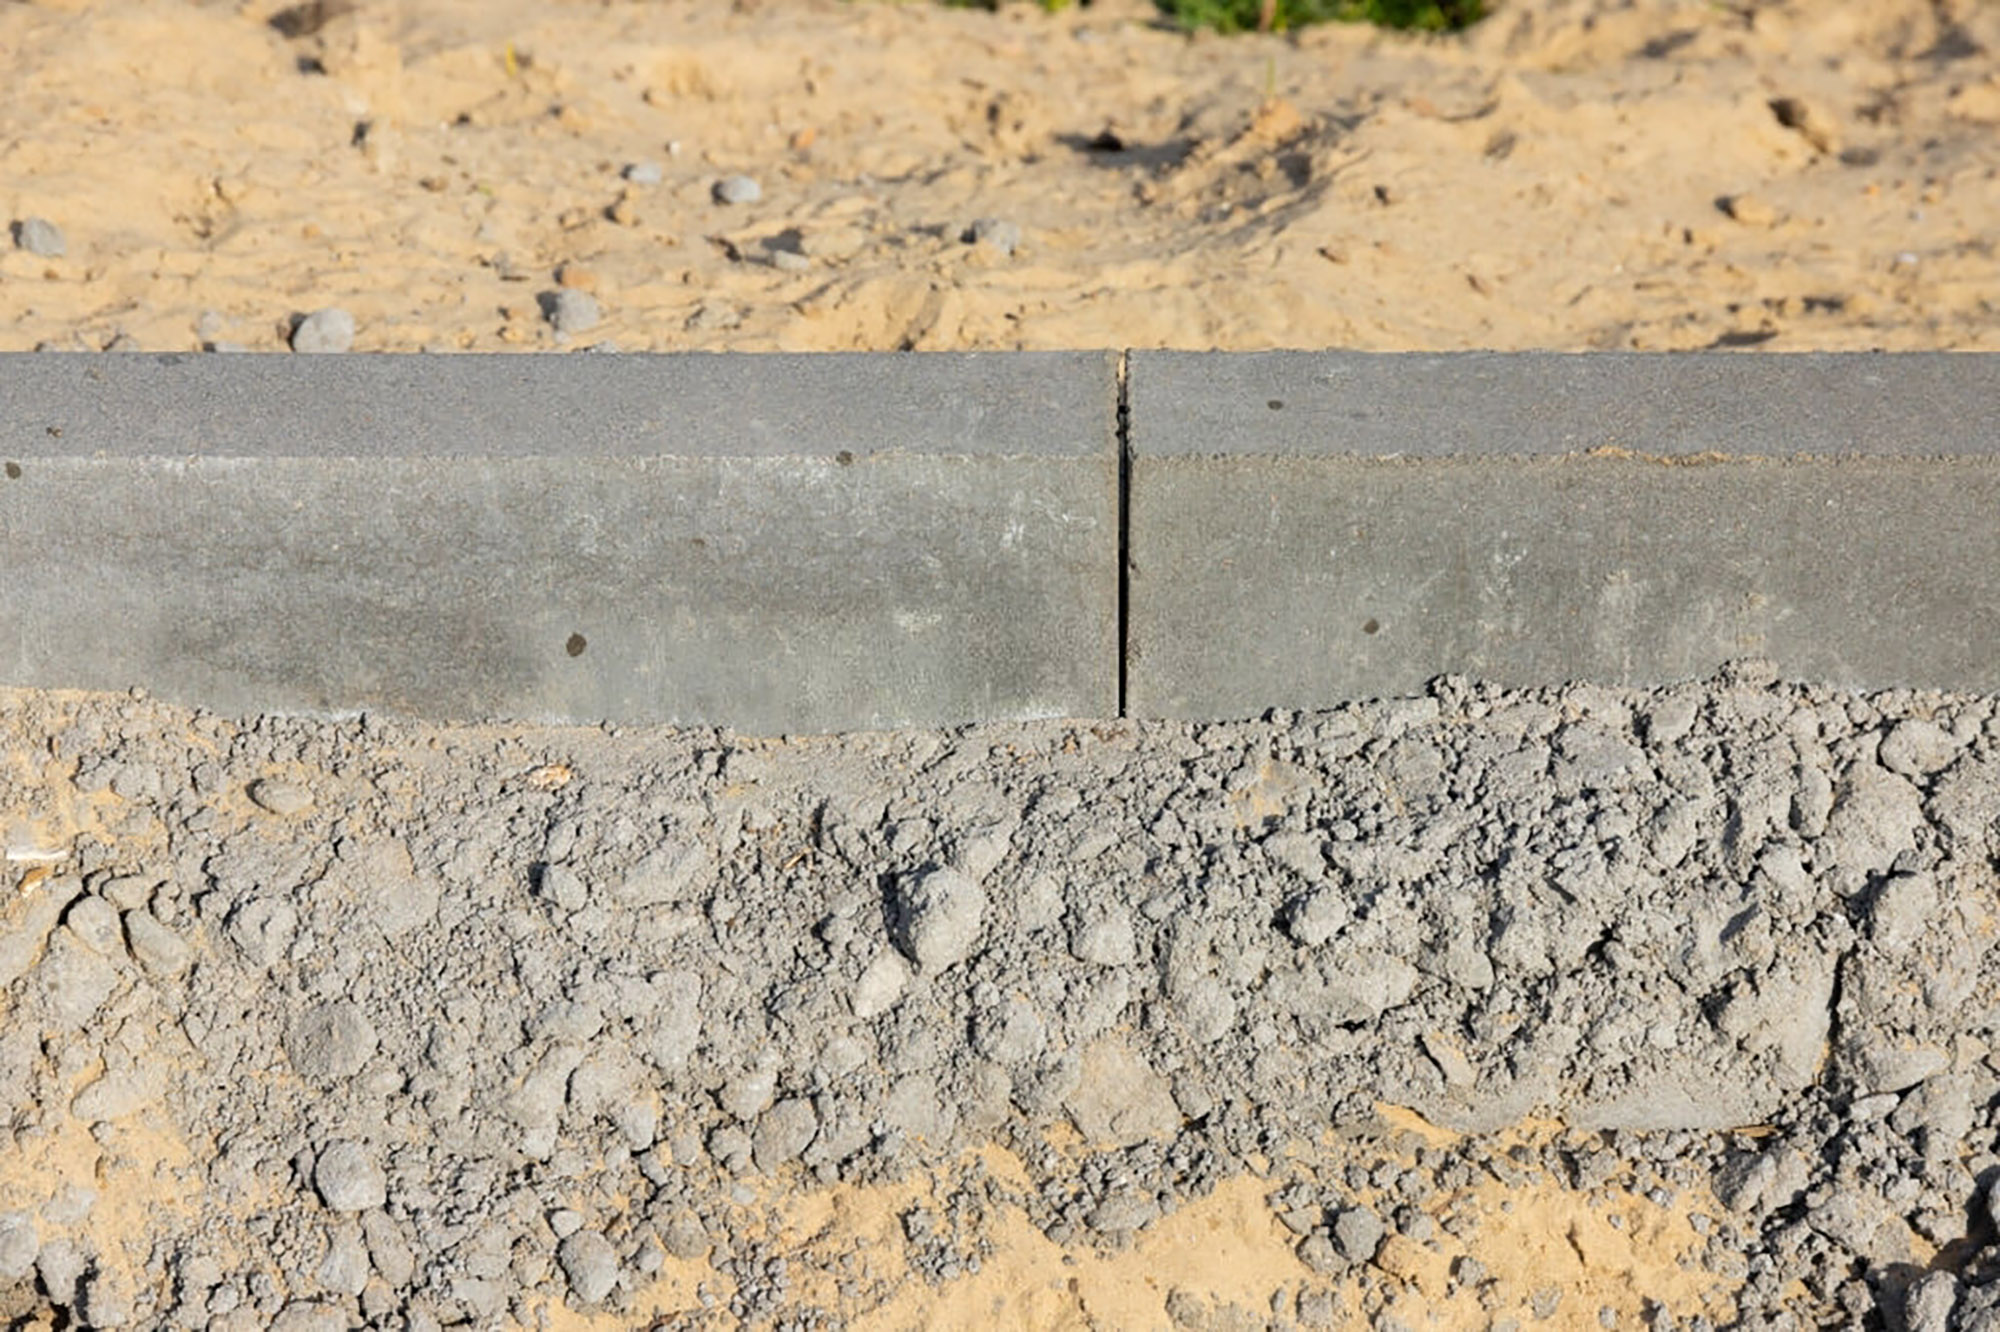 Тощий бетон М200